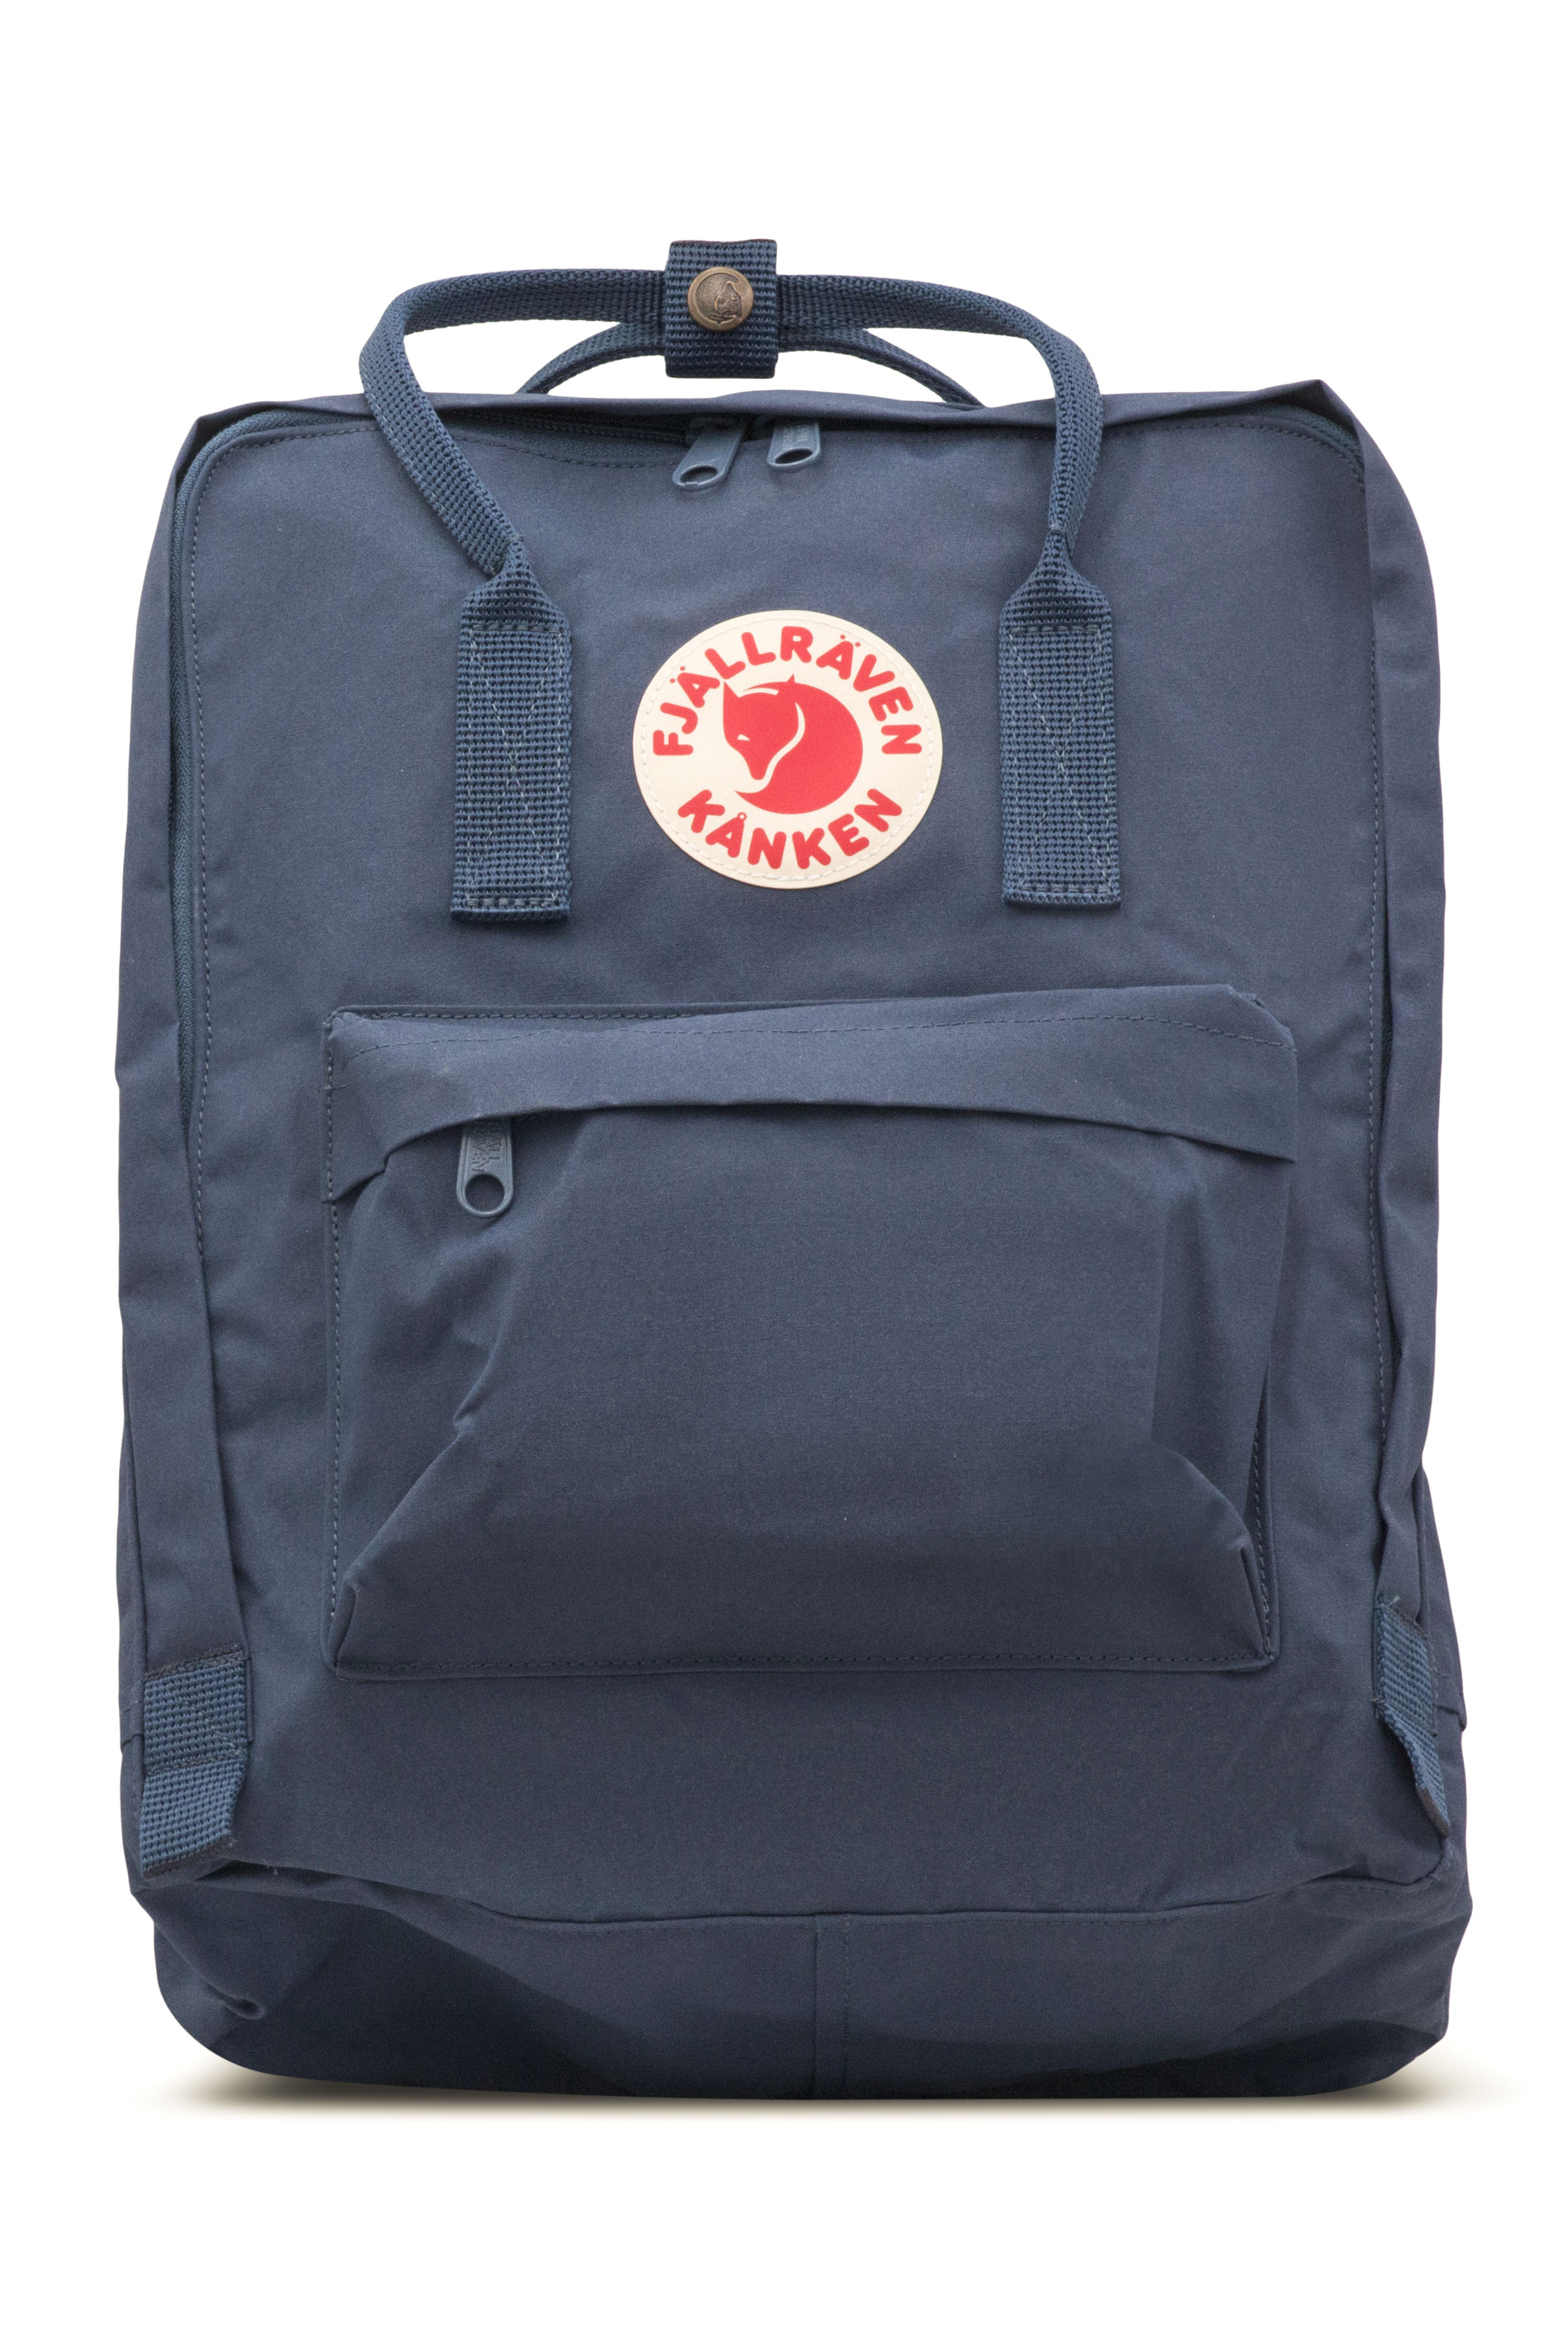 Magazijn Verbeelding Belangrijk nieuws Fjallraven - Kanken Classic Backpack for Everyday - Royal Blue 23510-540 -  Jacob Time Inc